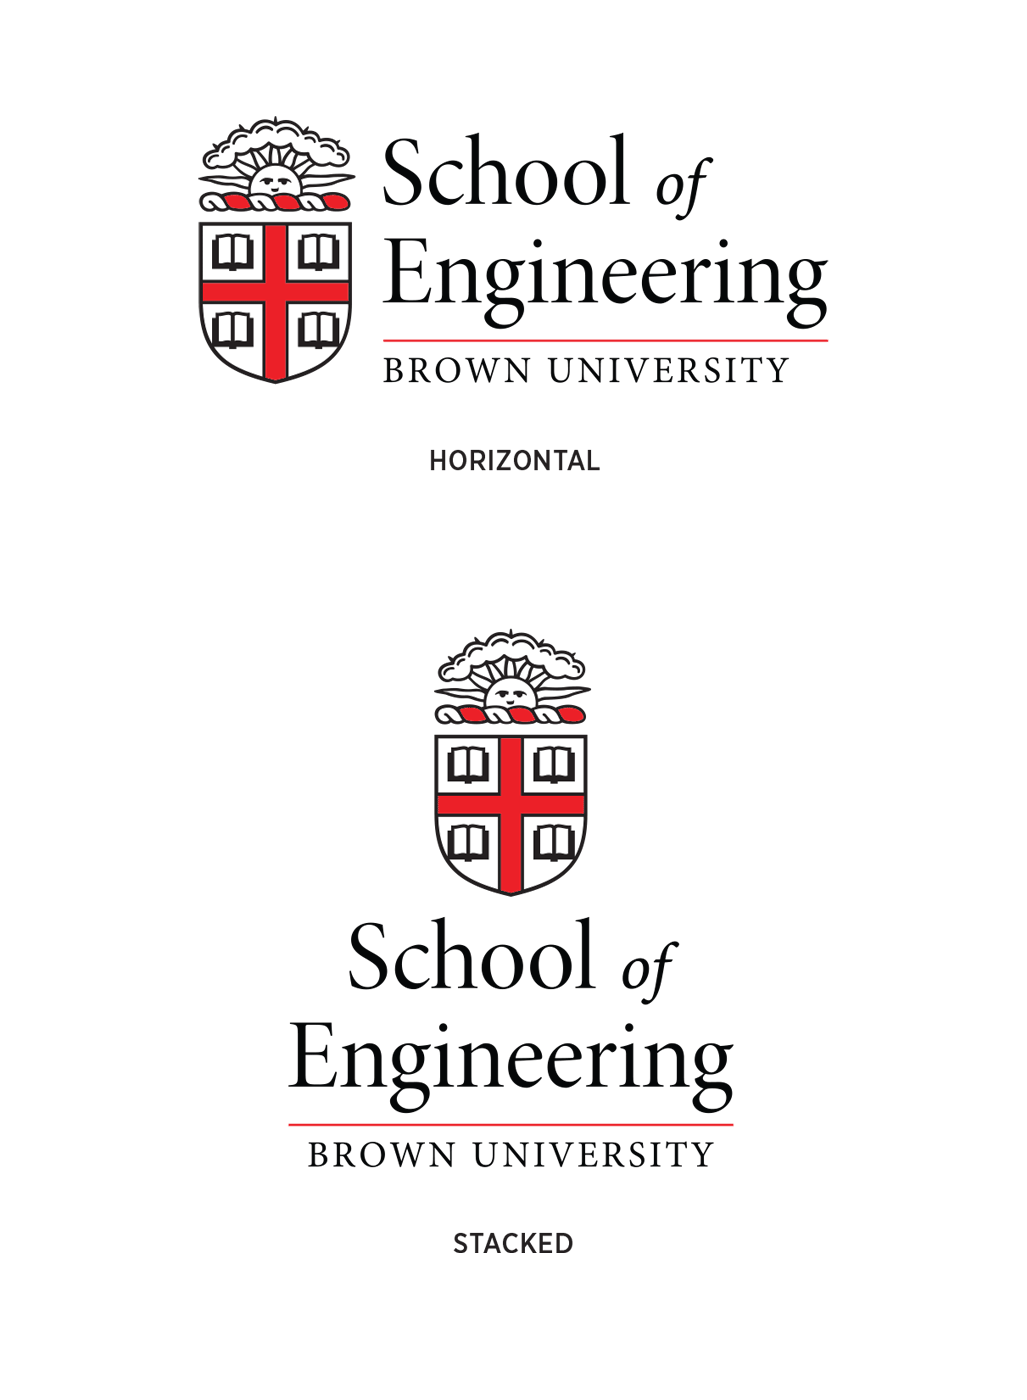 School of Engineering Logo Samples